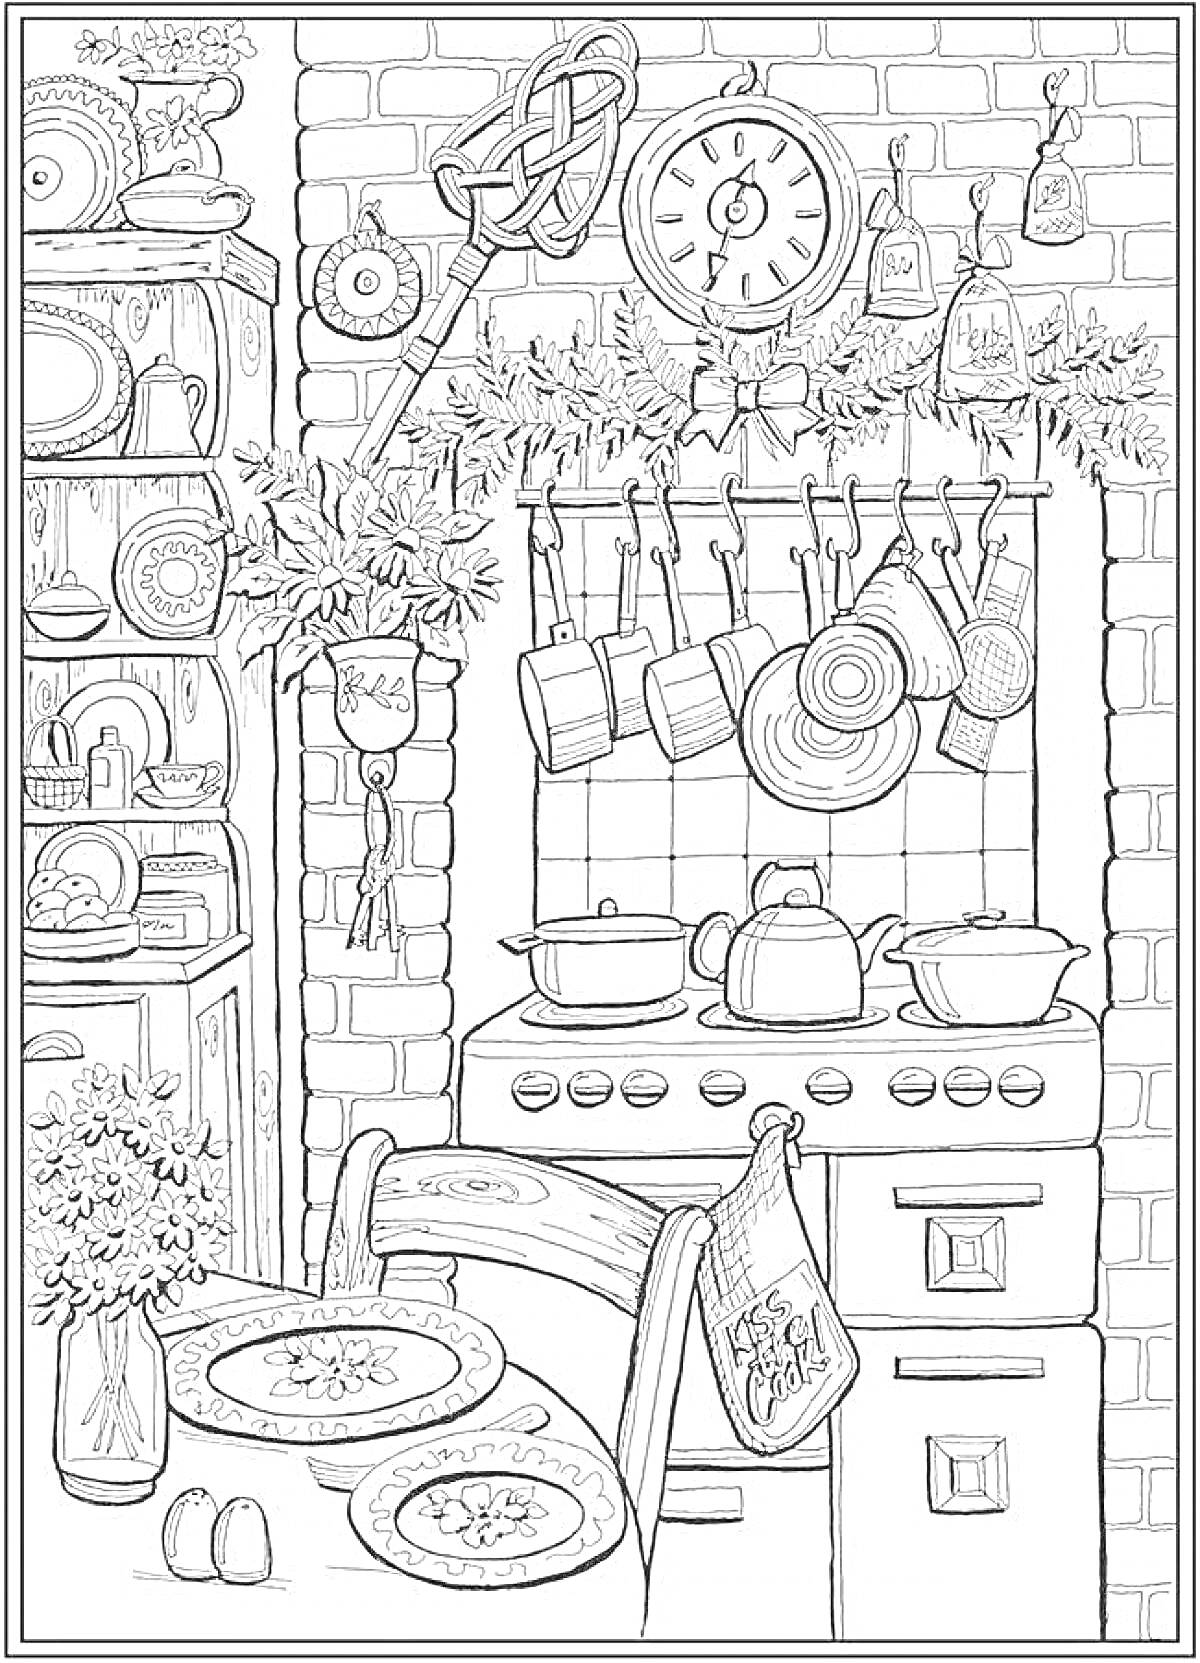 Раскраска Кухня с плитой, посудой на полках и висящими кастрюлями, стол с посудой, цветы на столе и полке, часы на кирпичной стене